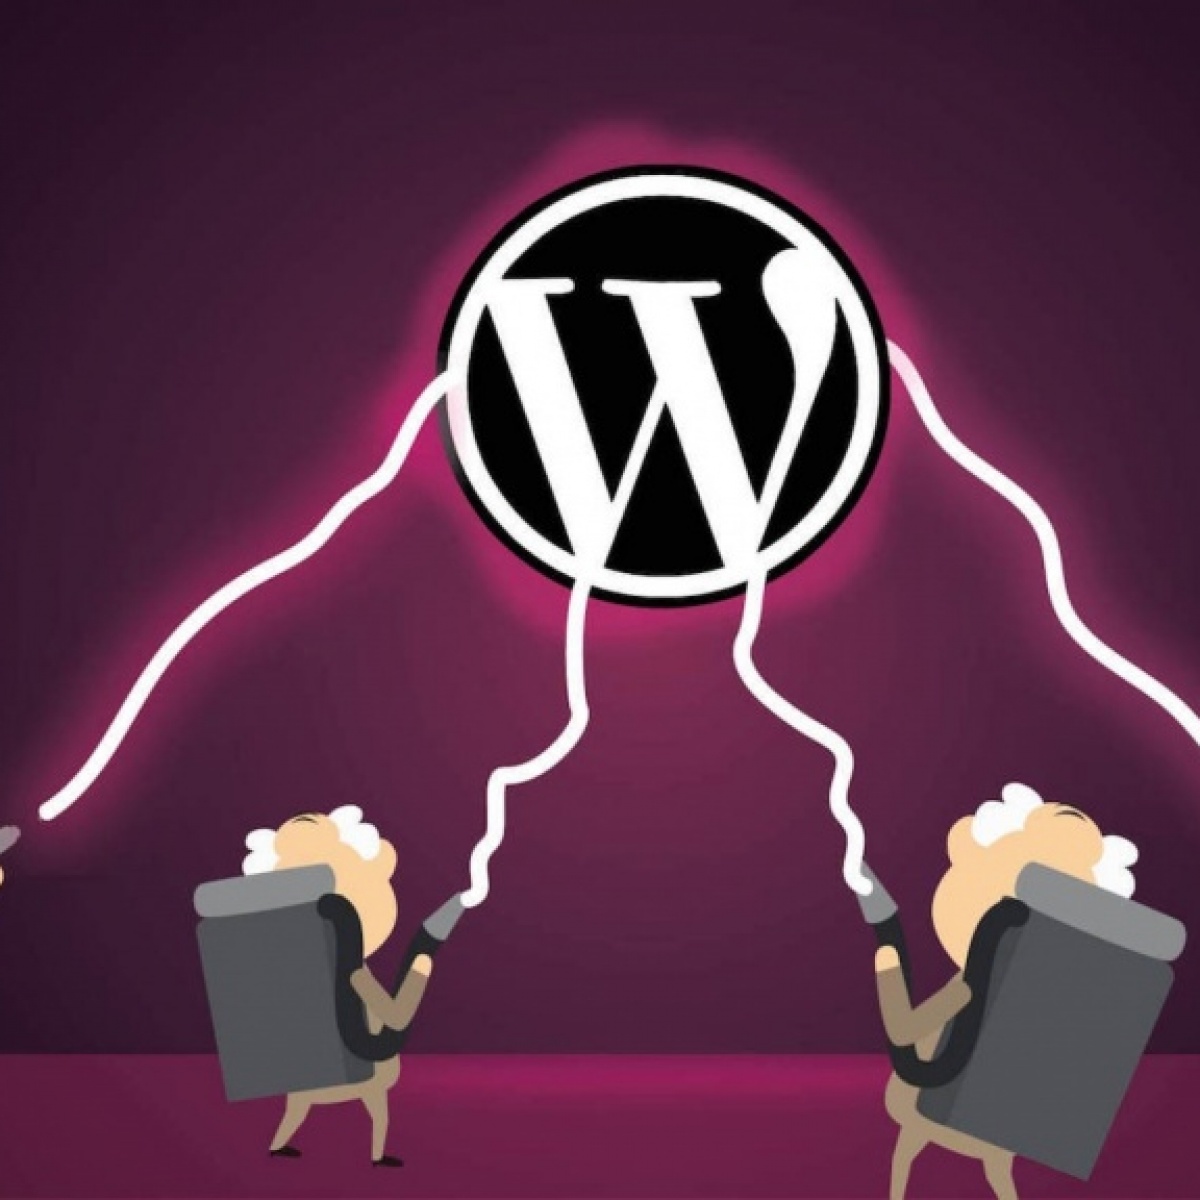 WordPress Saldırıları ve WP Code Eklentisi Tehdidi: Ne Yapmalı?